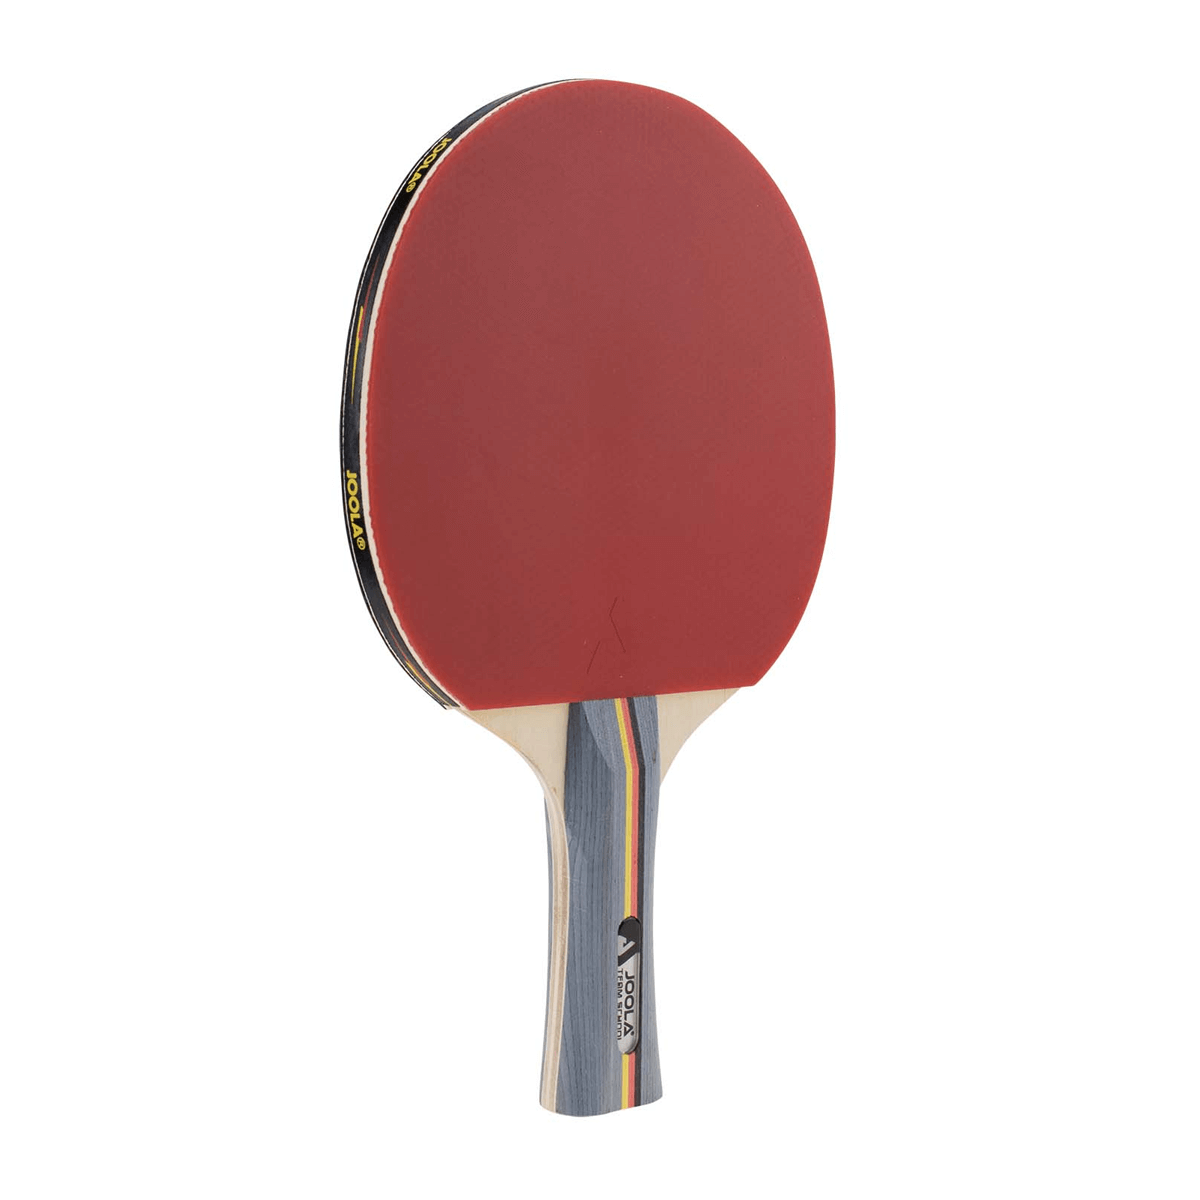 JOOLA TEAM SCHOOL Table Tennis Racket